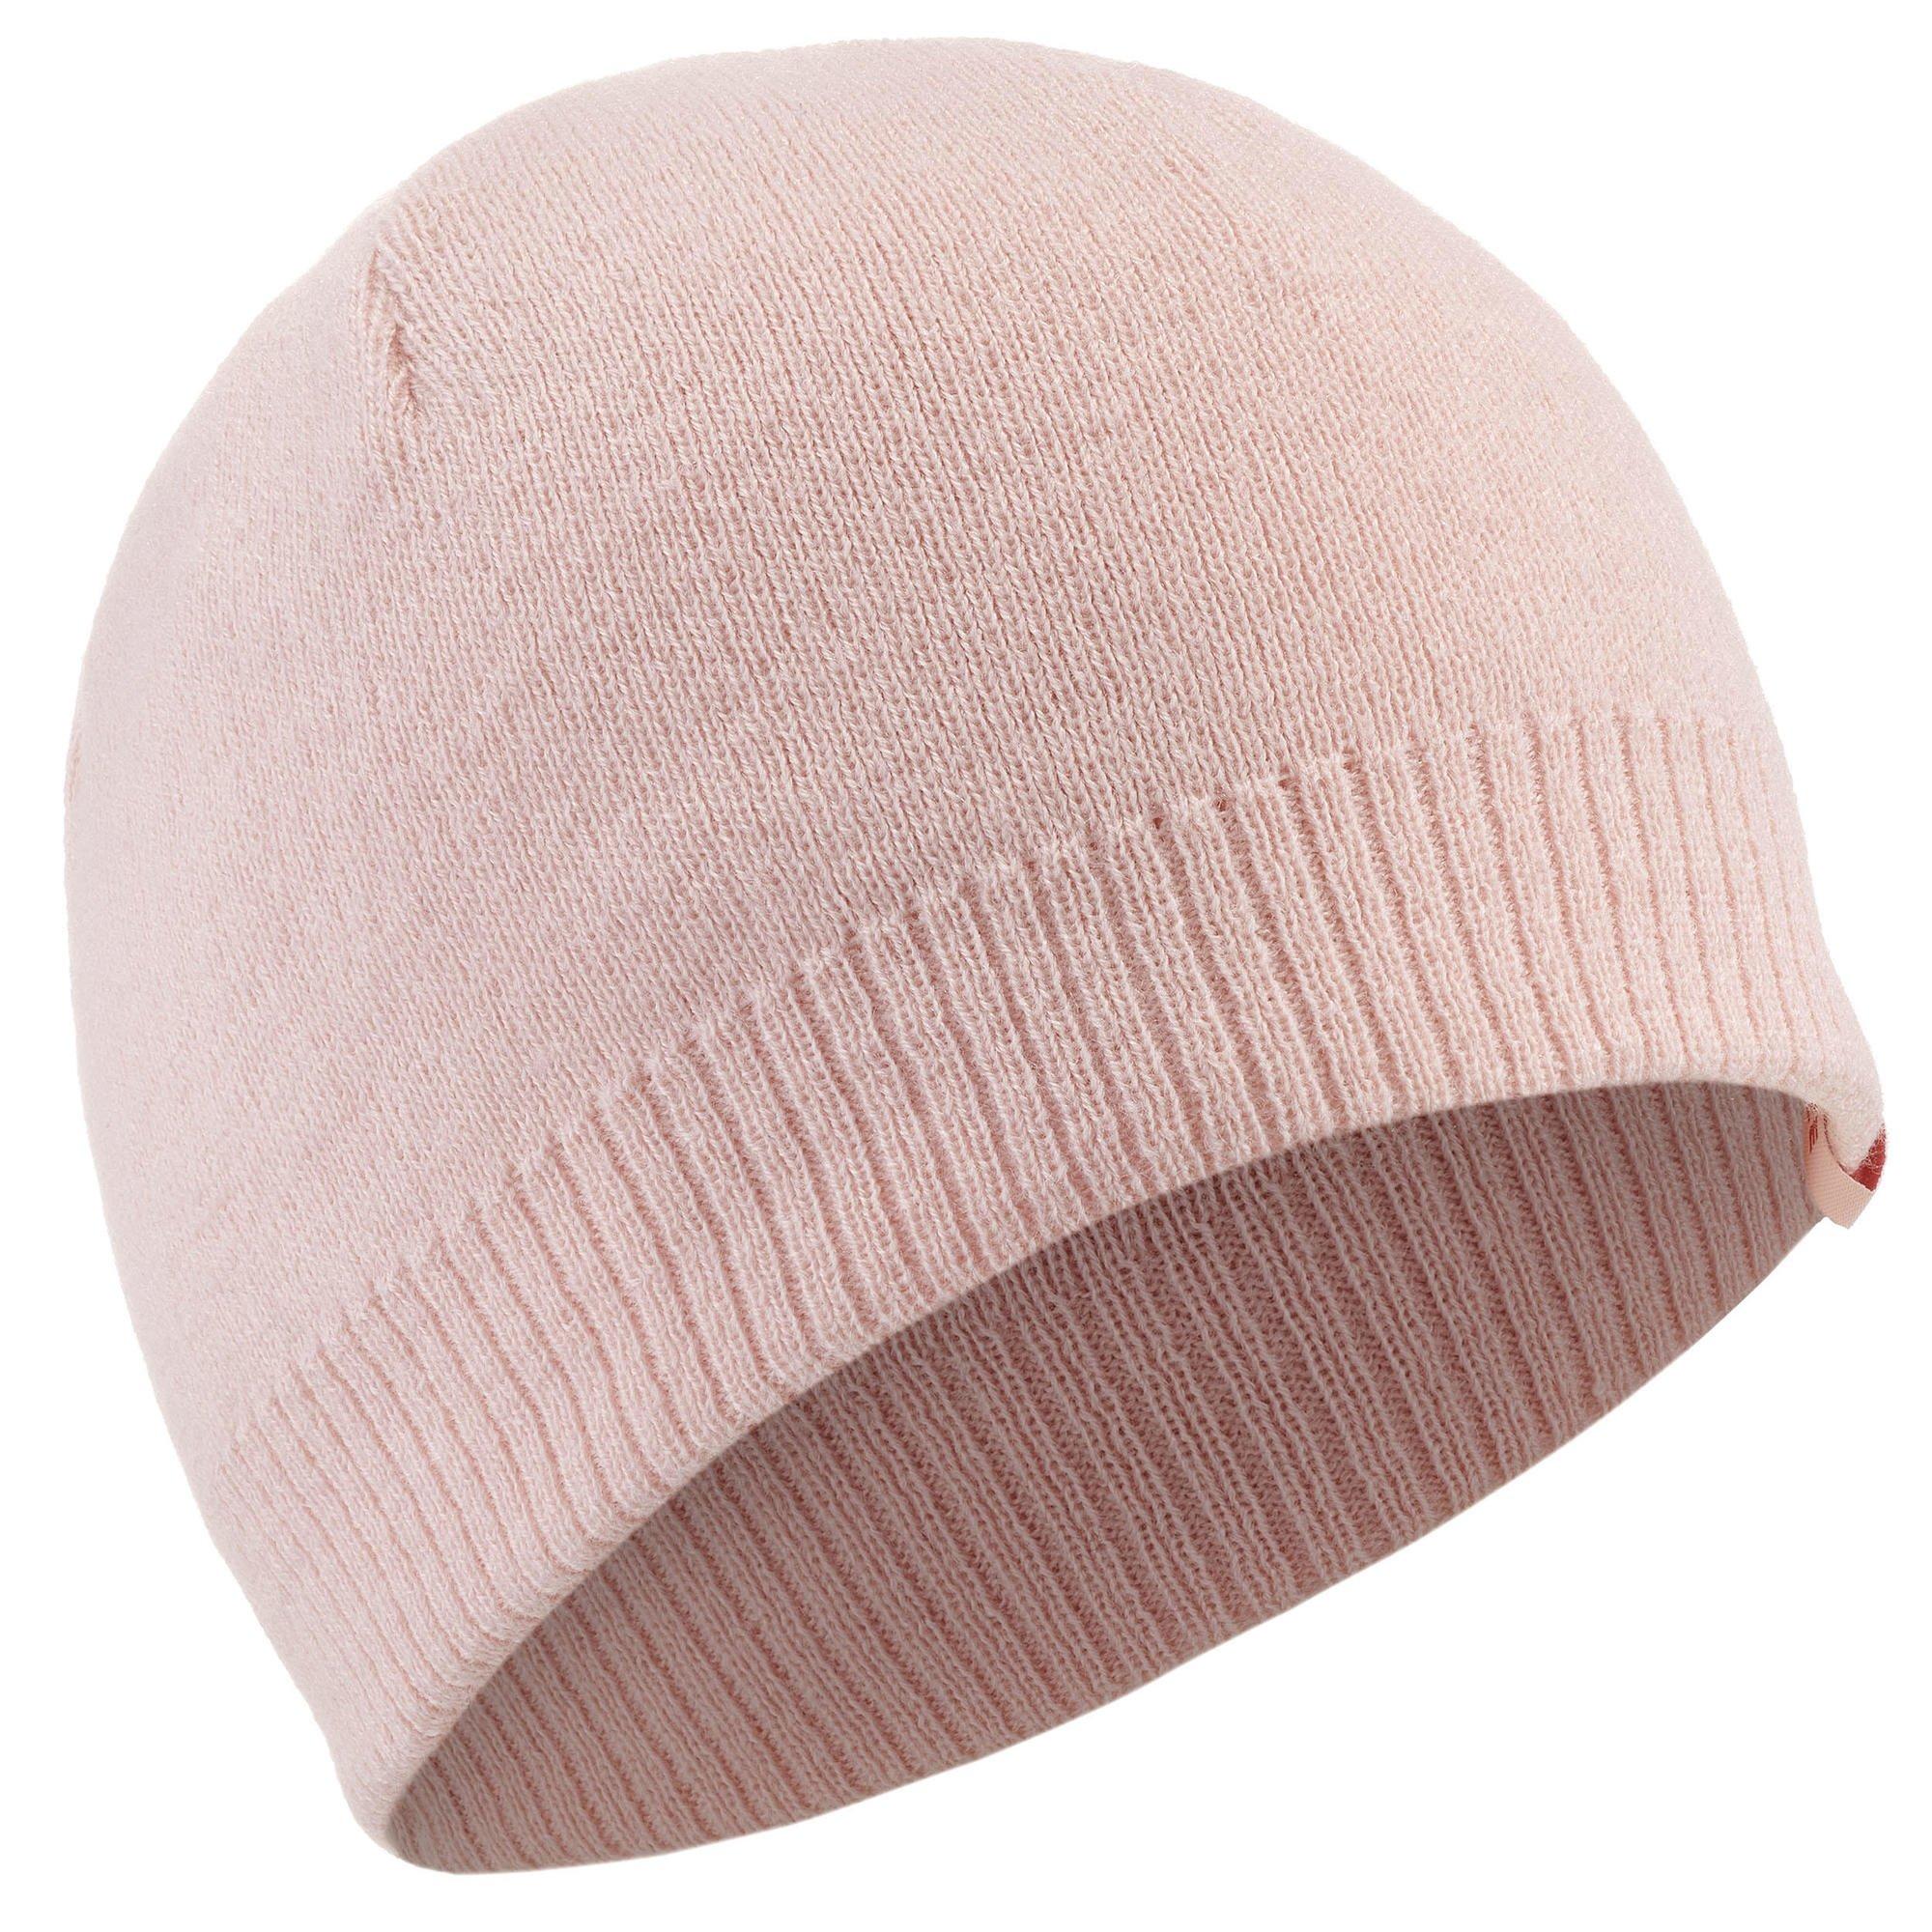 Лыжная шапка Decathlon для взрослых — простая Wedze, розовый женская вязаная шапка шарф шапка s образный вырез теплые зимние шапки балаклава маска для мужчин и женщин модная шапка теплая флисовая